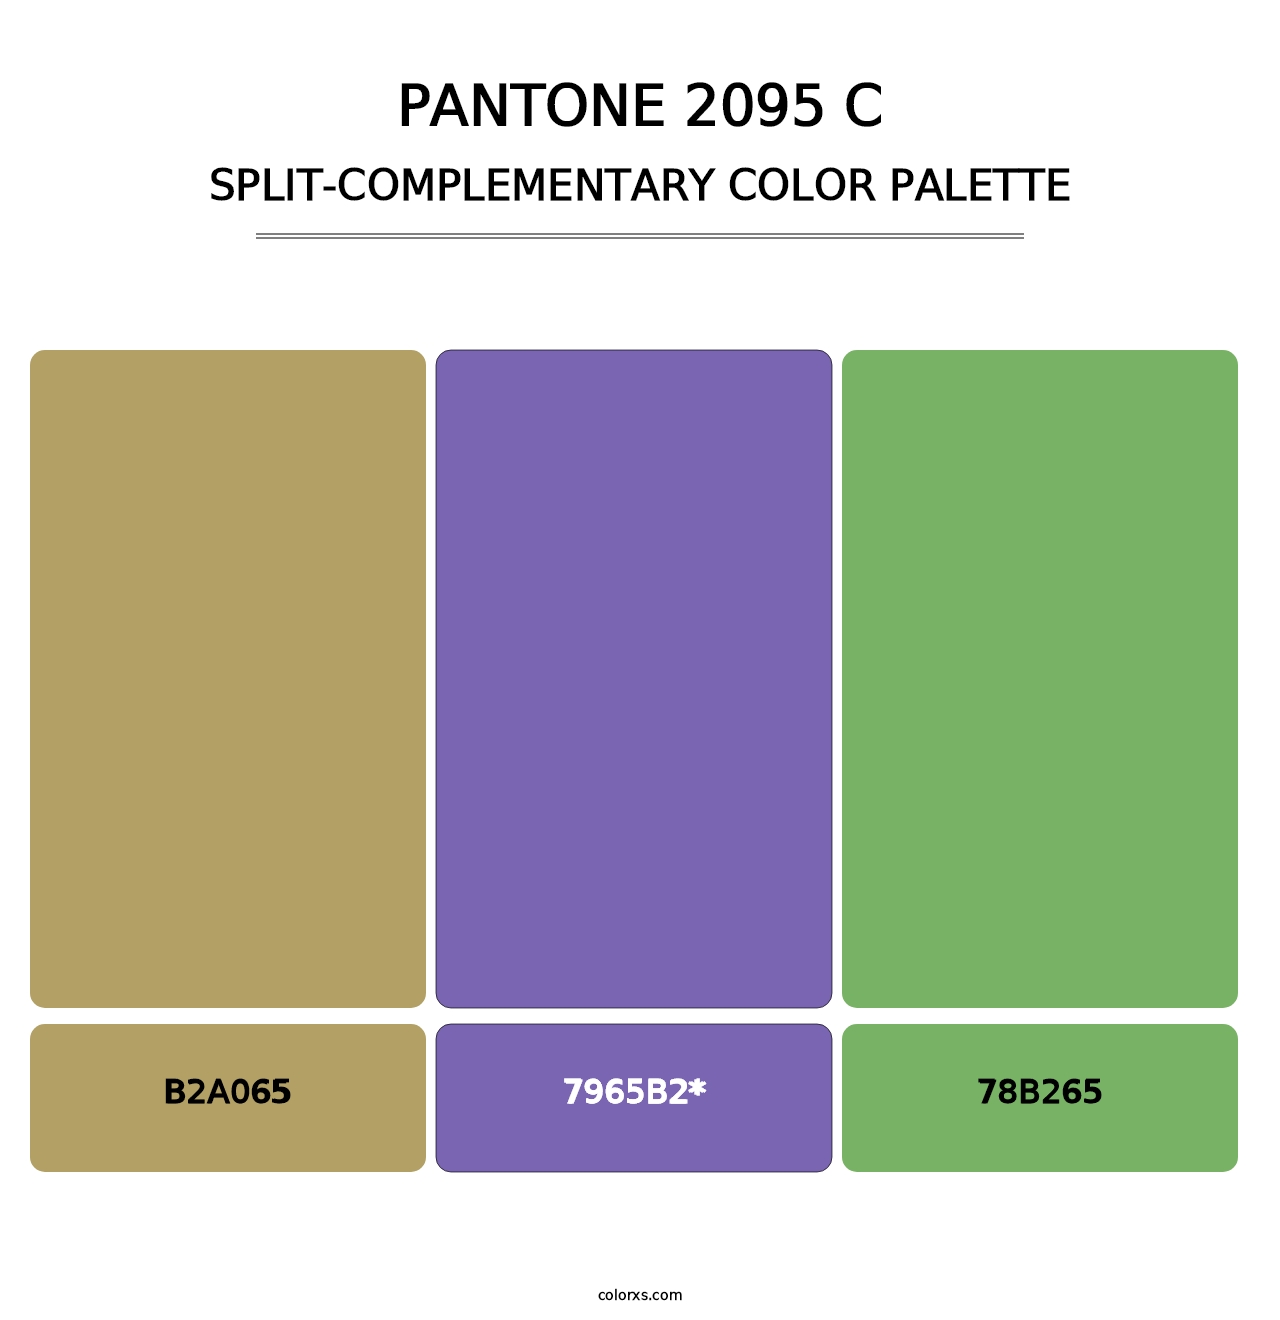 PANTONE 2095 C - Split-Complementary Color Palette